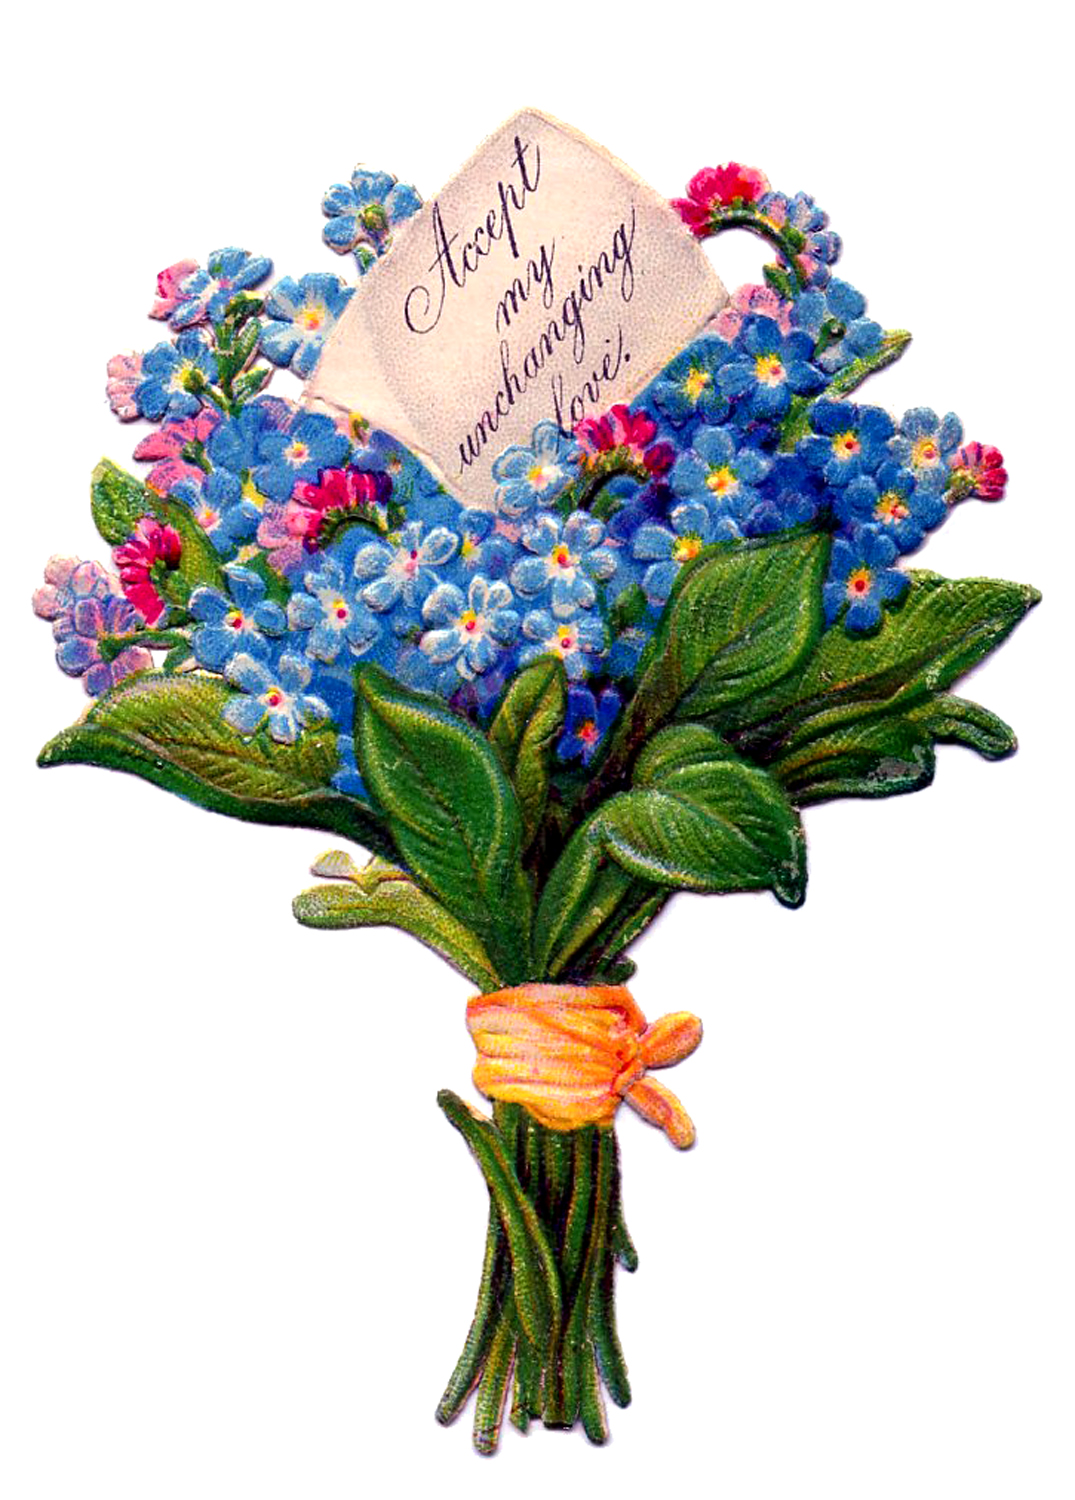 Vintage flower bouquet clipart